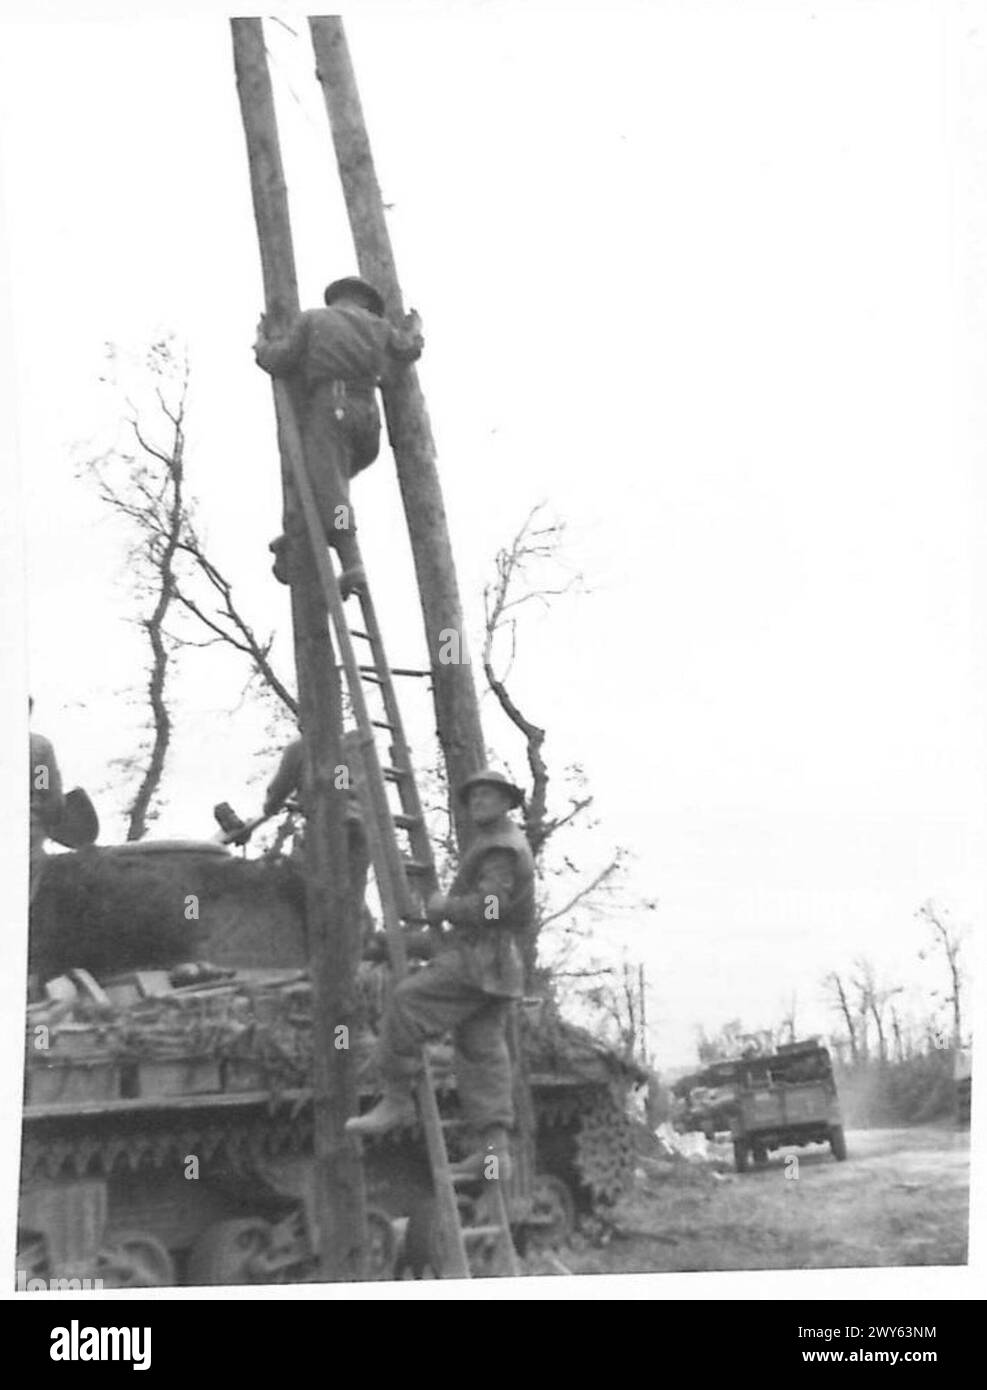 L'ATTACCO A CAEN - 59 Divisione segnali, il Royal Corps of Signals linesmen segue la fanteria in un villaggio a nord di Caen per riparare i cavi telefonici da campo. , British Army, 21st Army Group Foto Stock